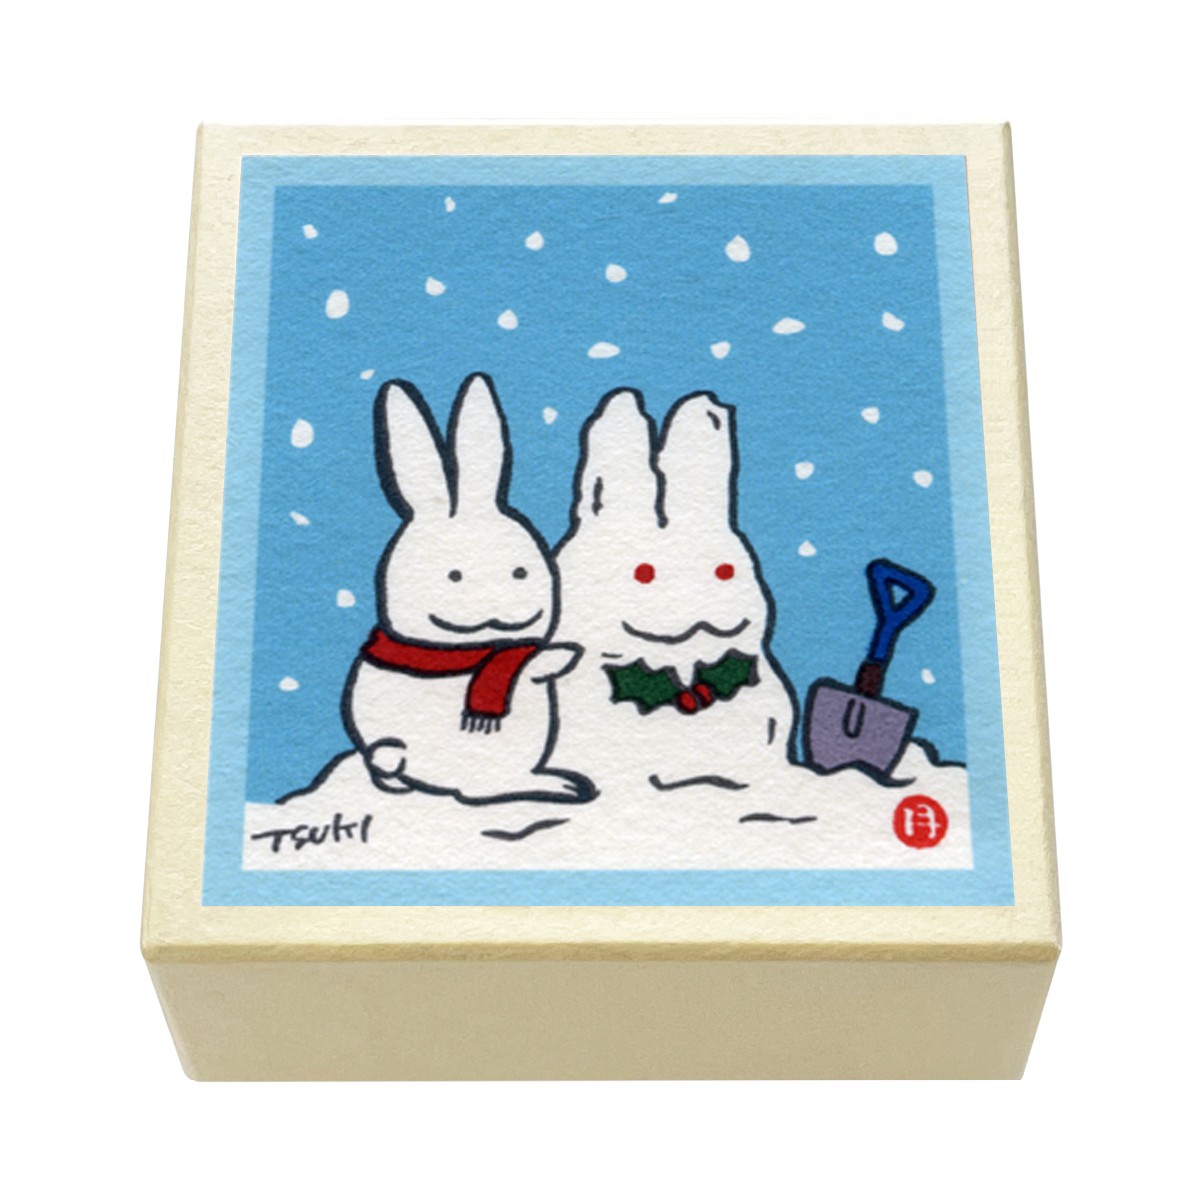 版画紙箱 おはこ 季節のおはこ 師走 クリスマス 西村月 雪だるま